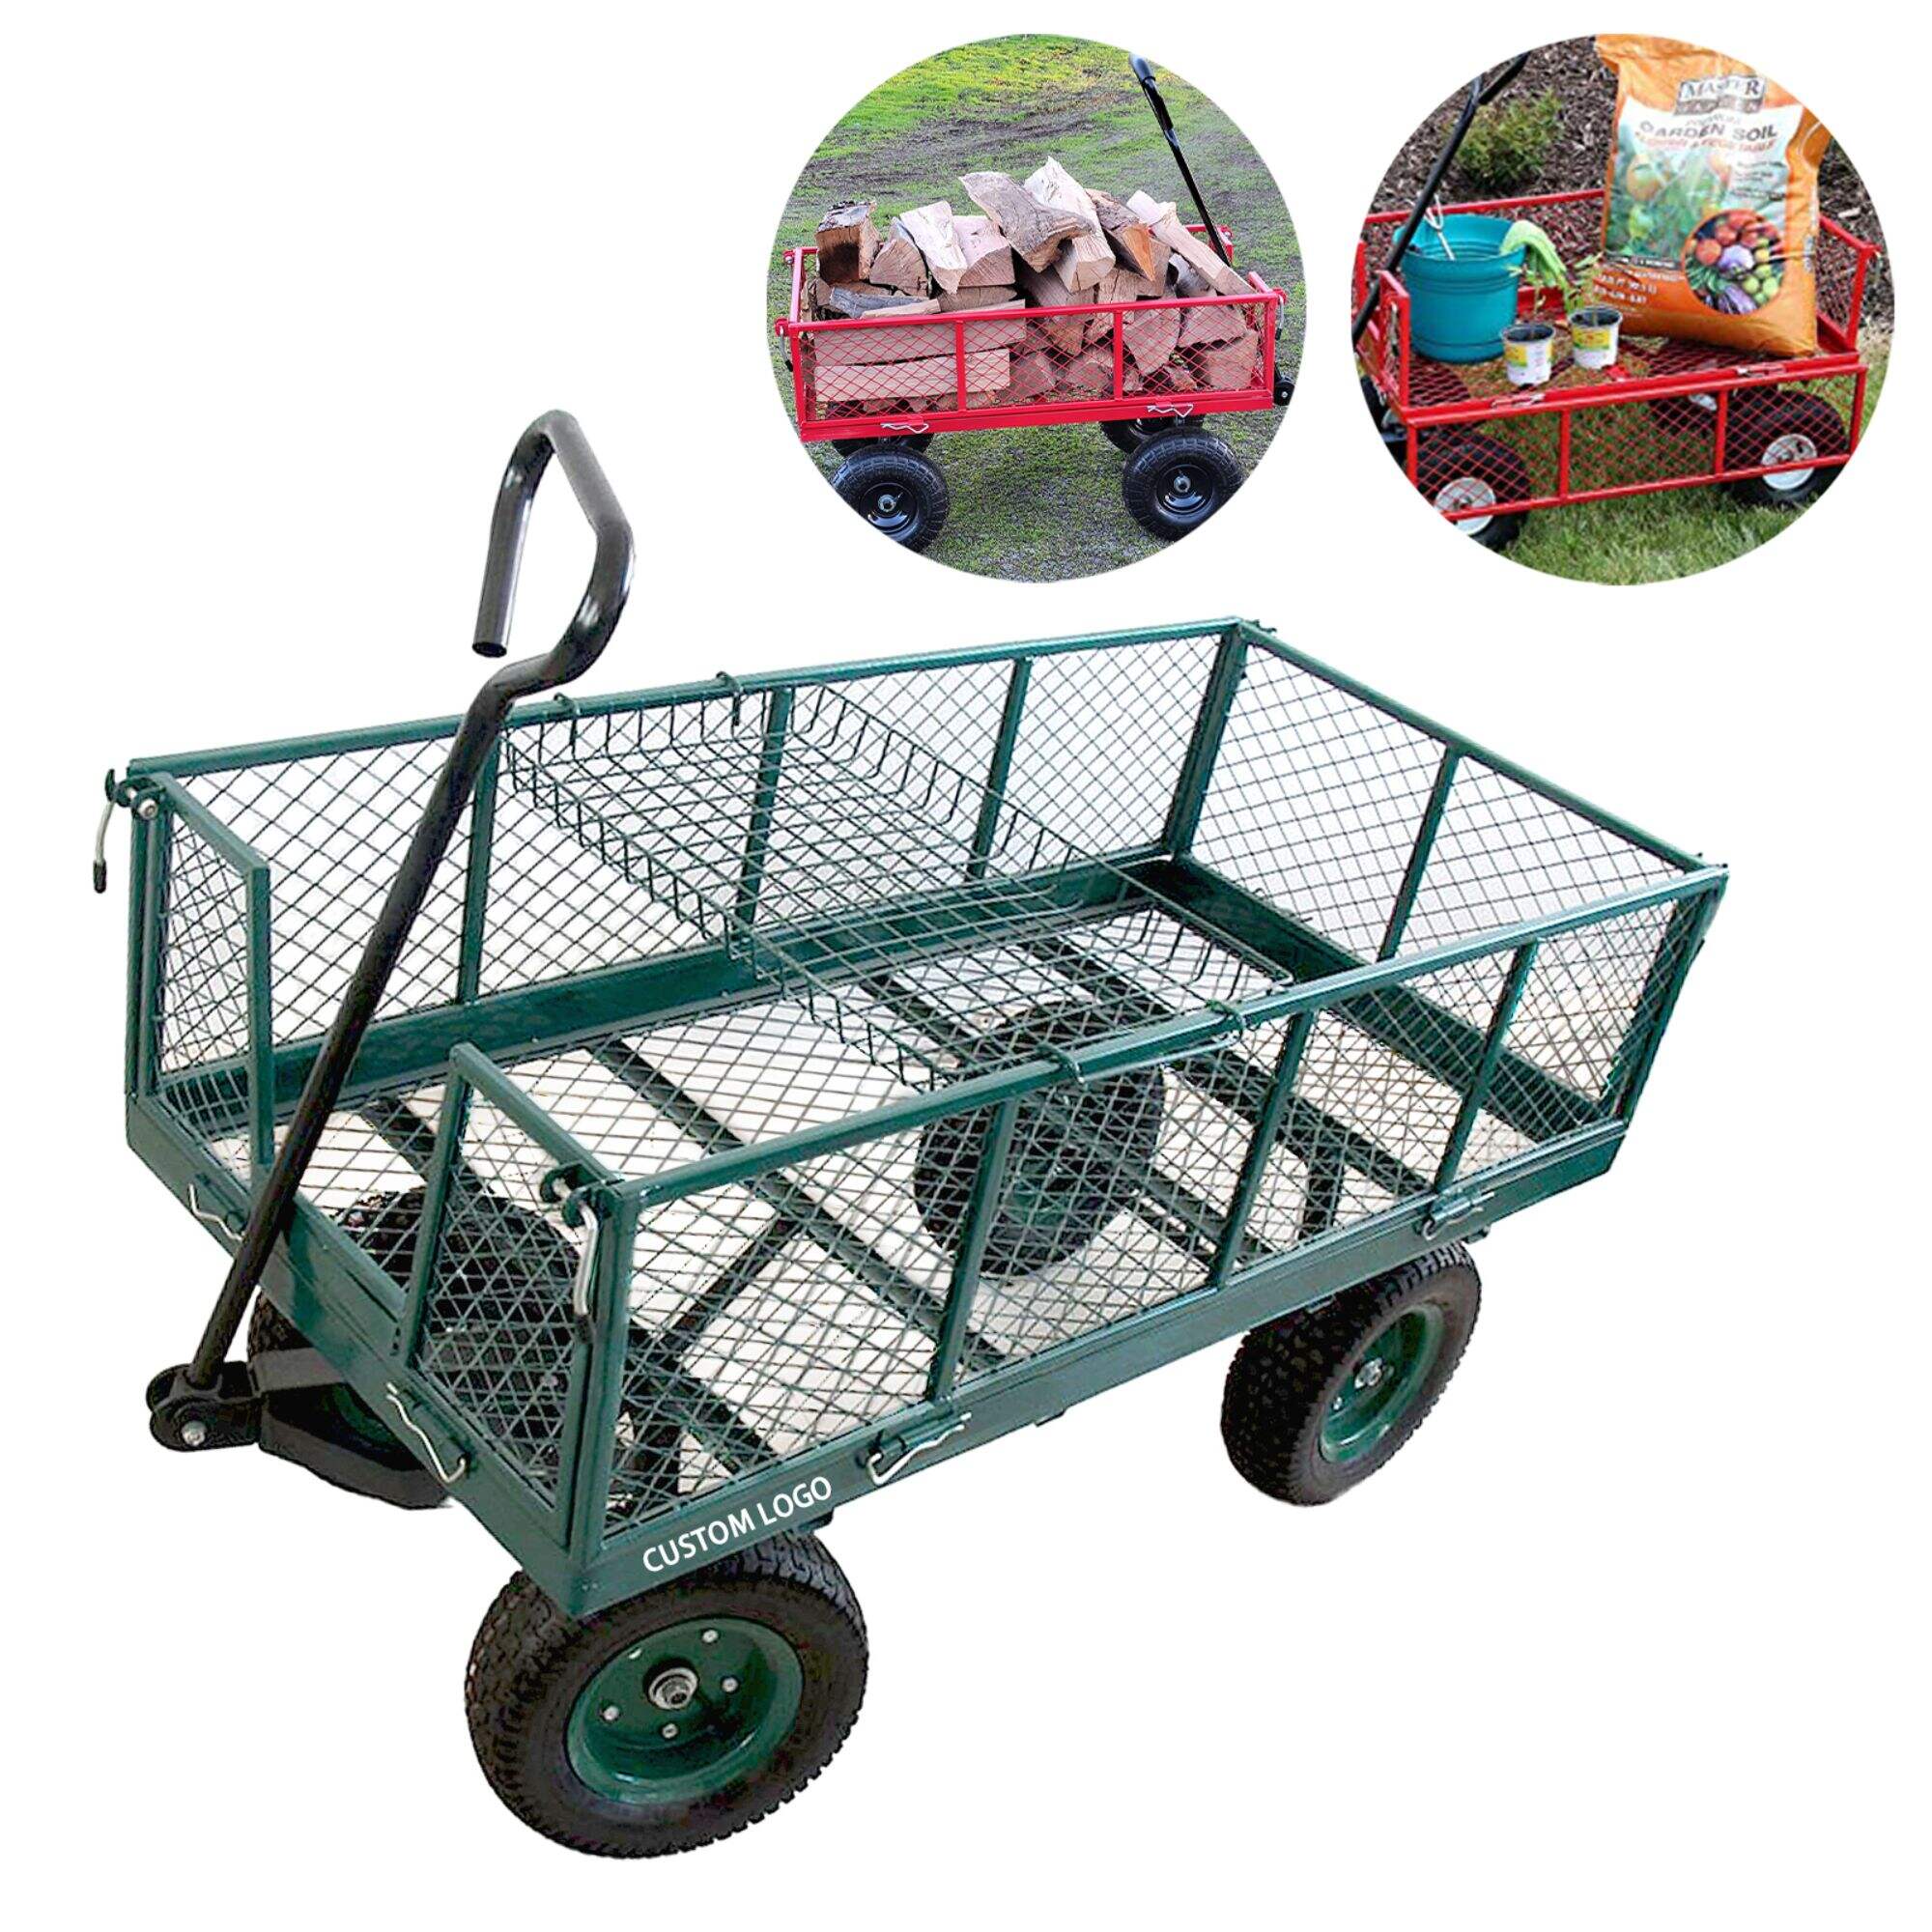 Wózek ogrodowy z siatki stalowej TC1840, składany wózek użytkowy, ze zdejmowanymi bokami, 10-calowe koło pneumatyczne 3.50-4, udźwig 300 kg